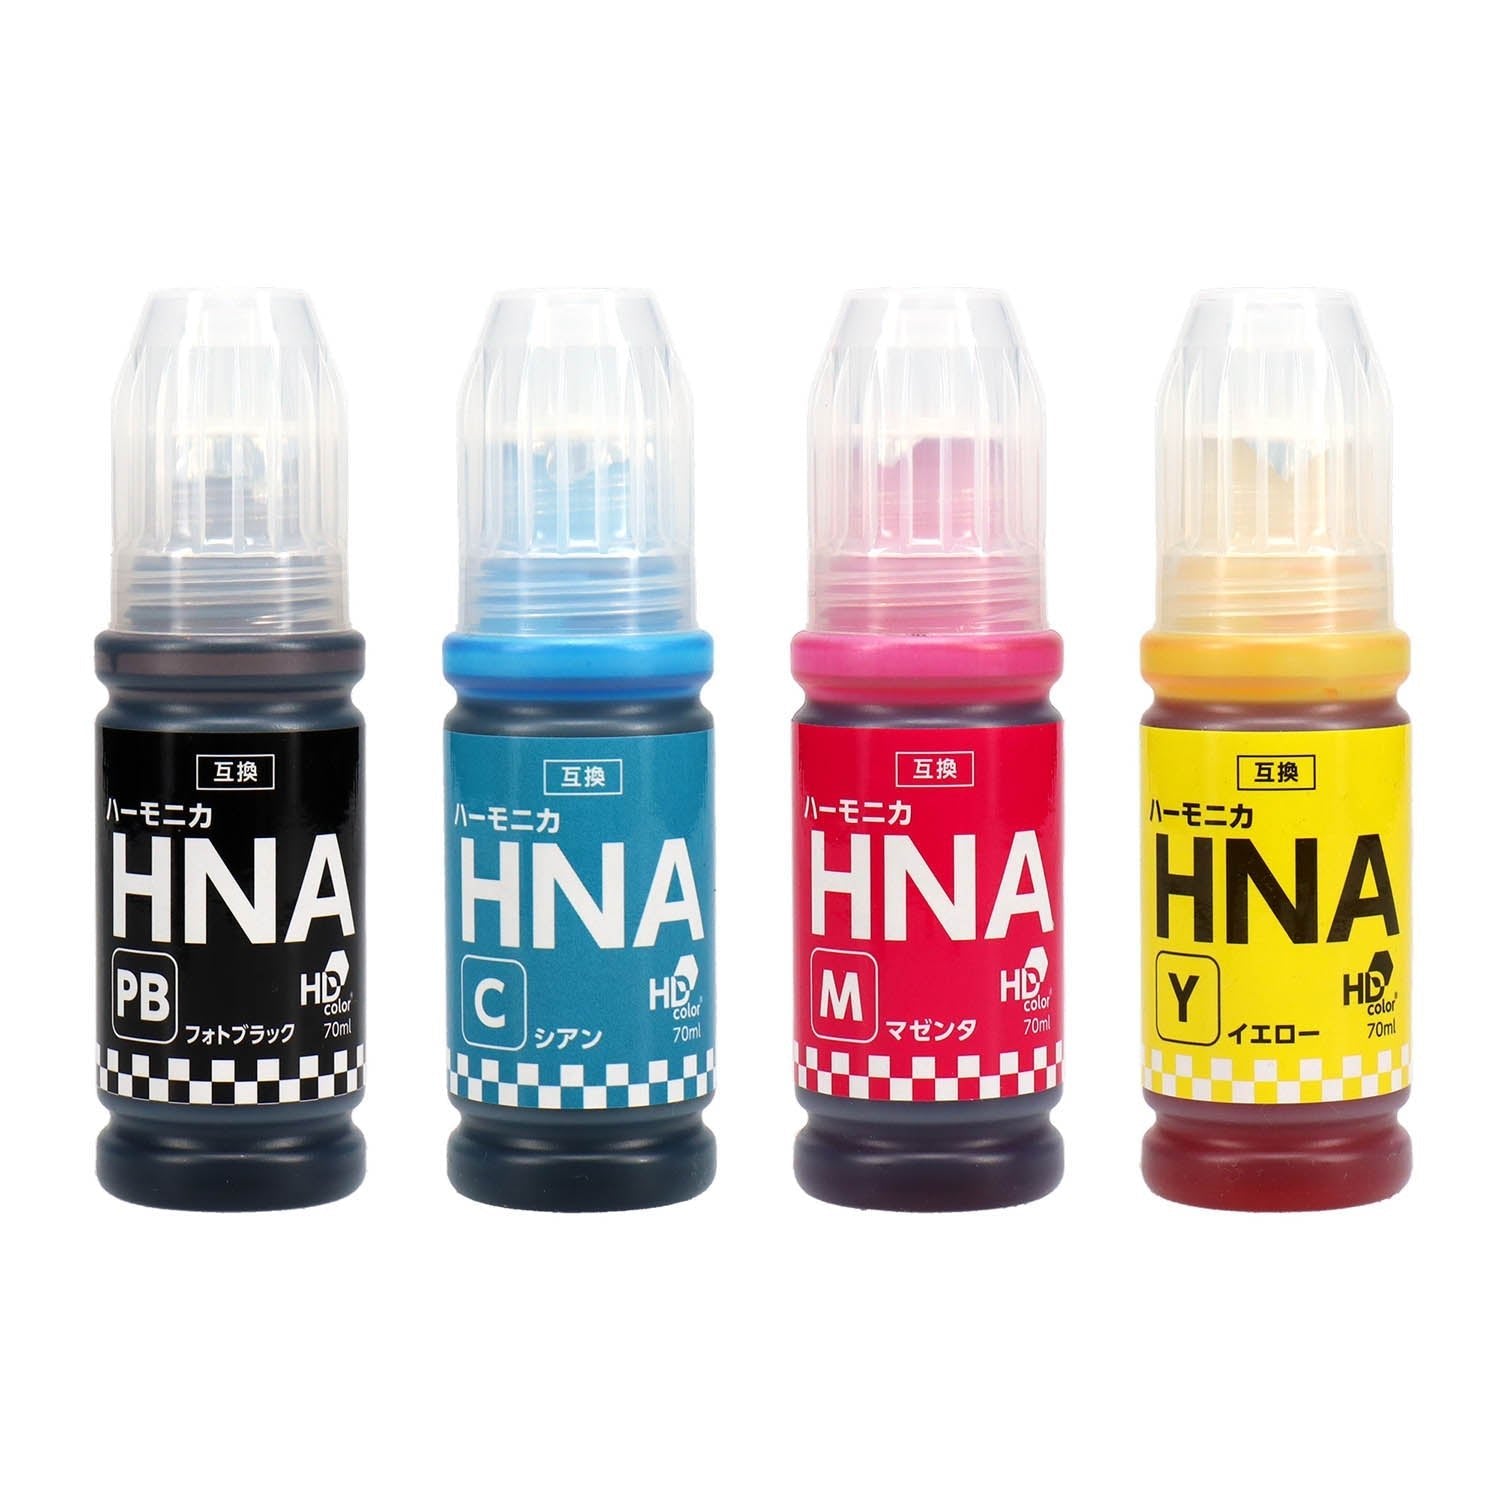 エプソン用 HNA (ハーモニカ) 互換インクボトル フォトブラック＋カラー3色